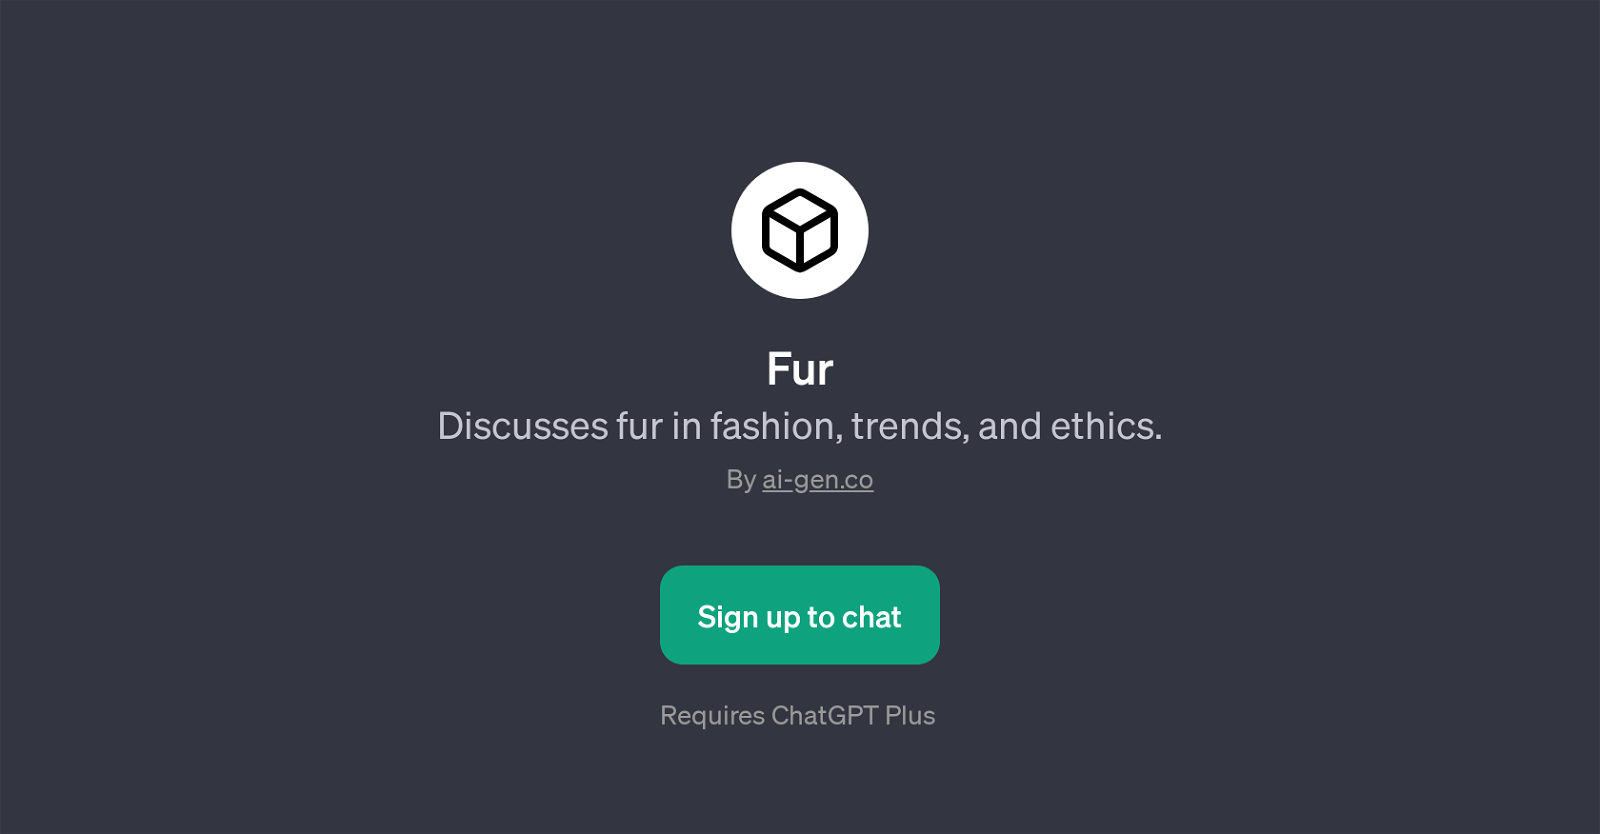 Fur website